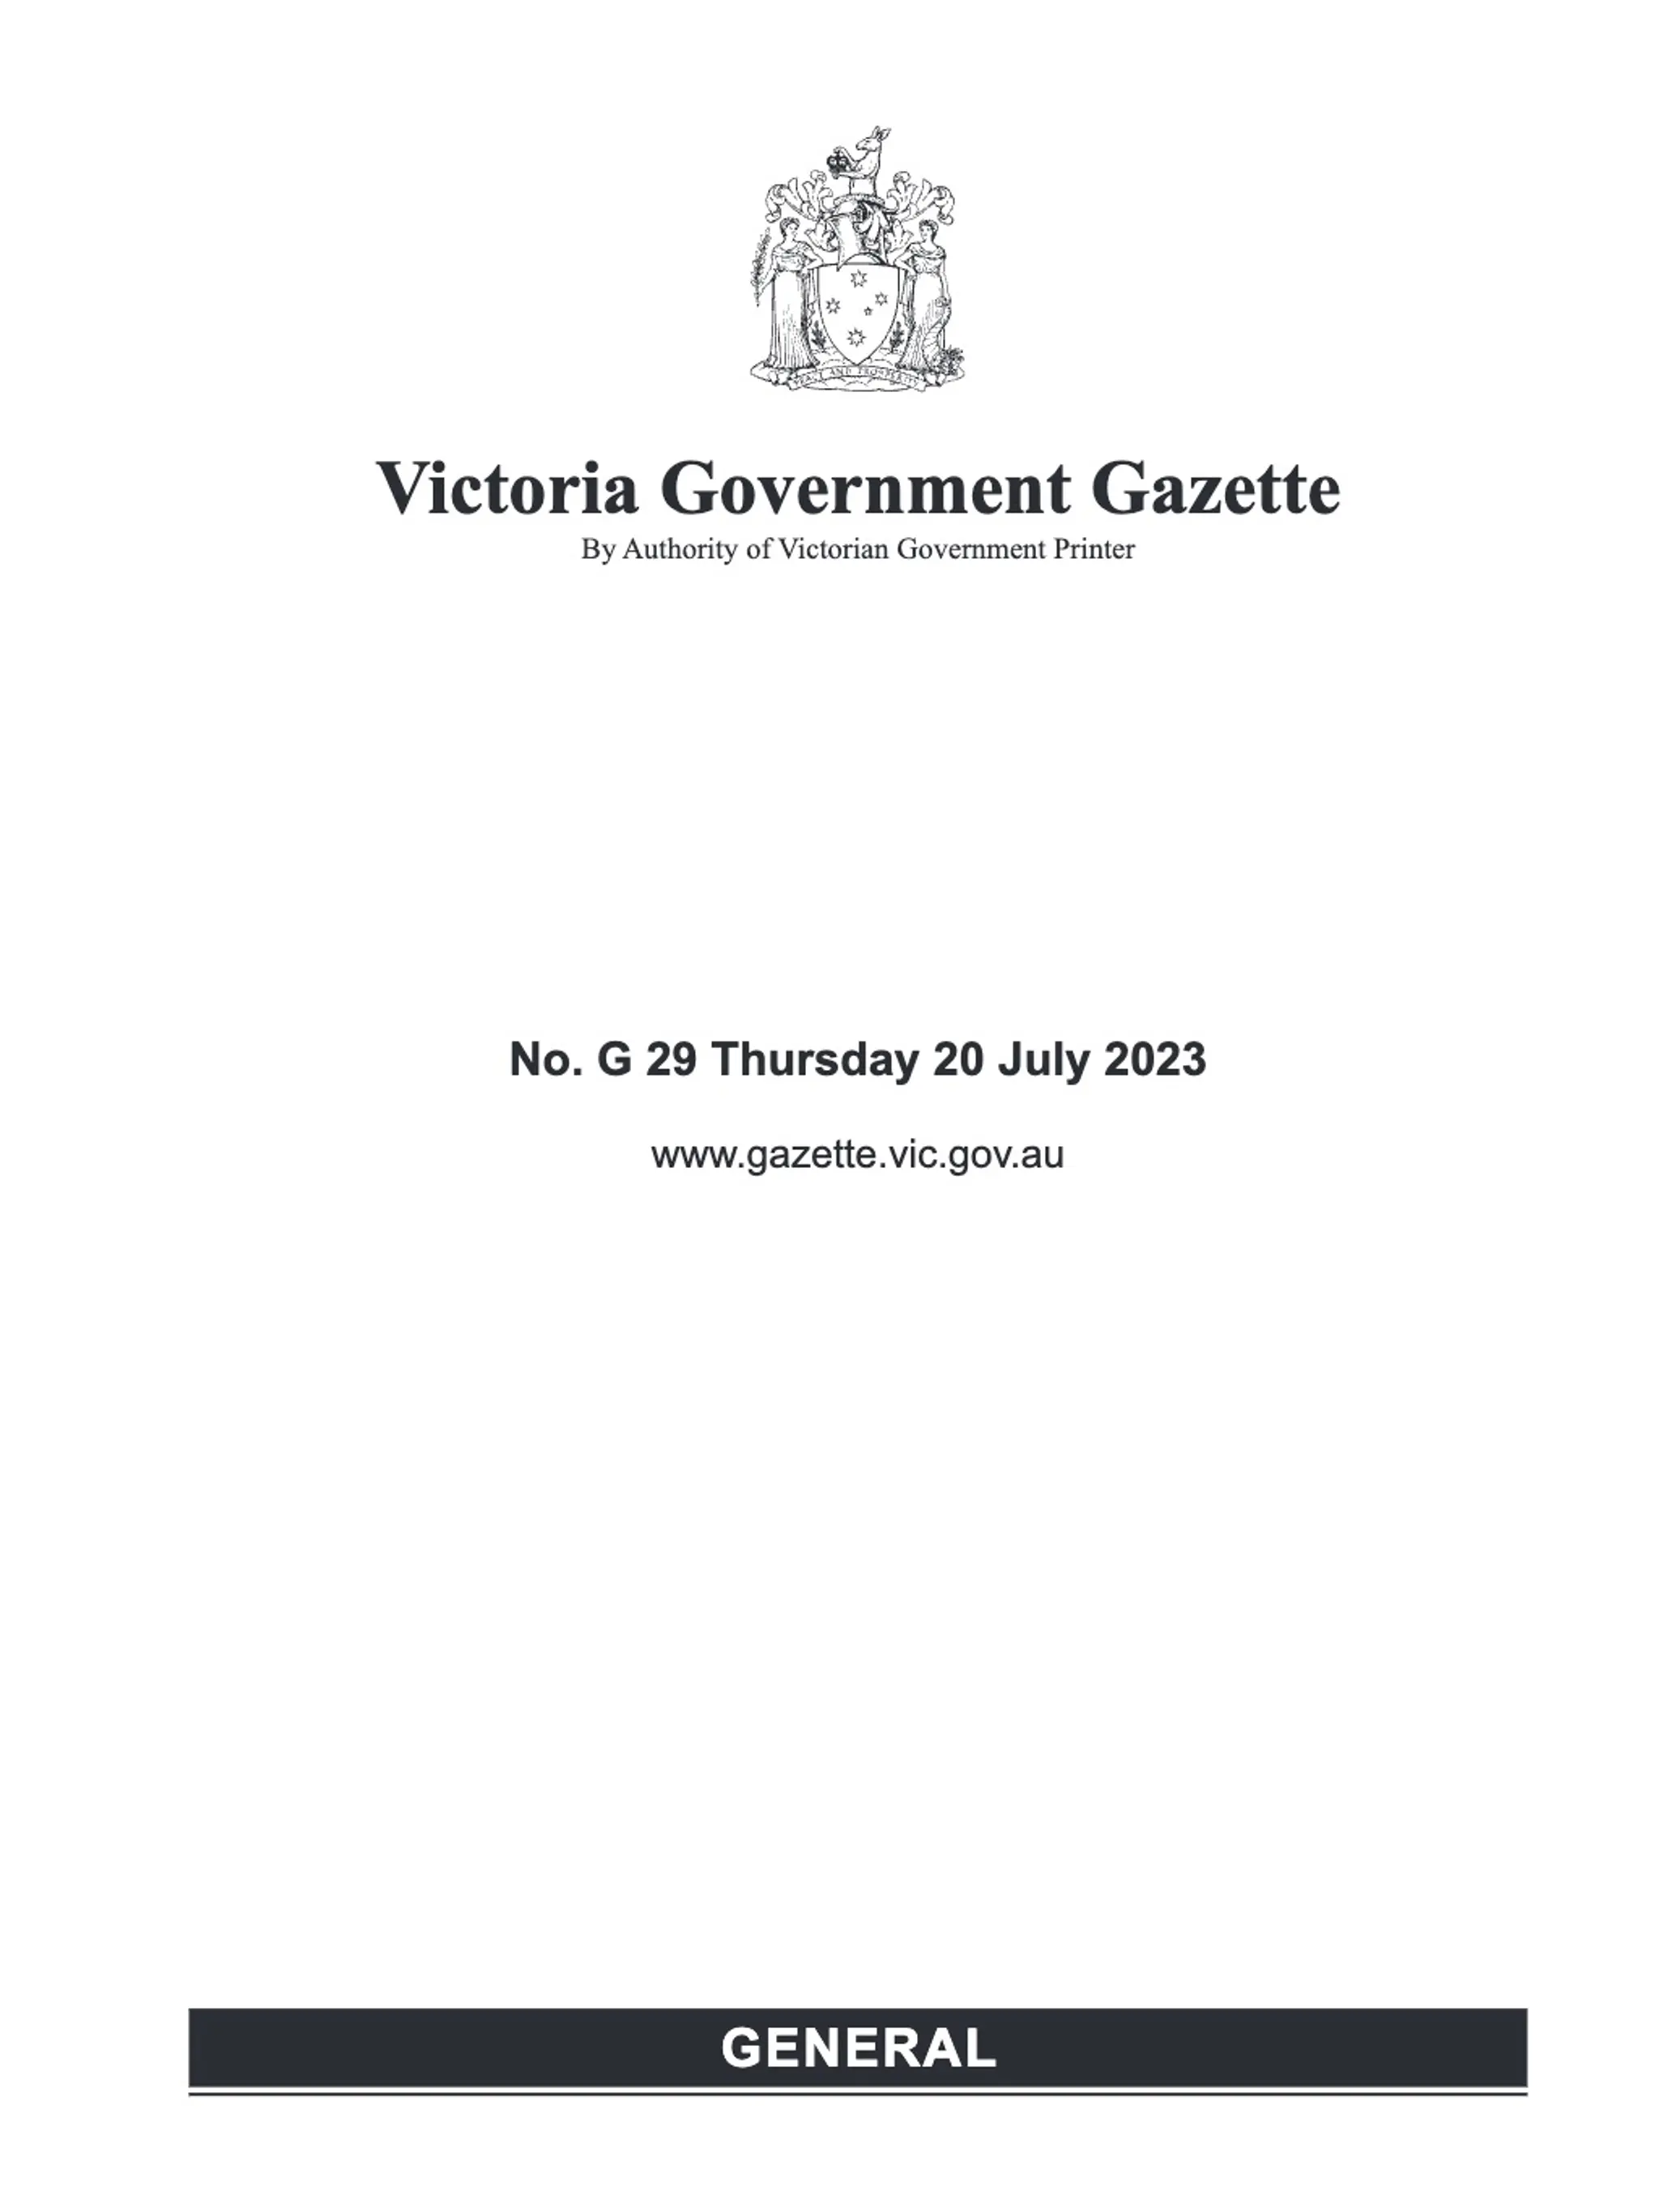 Victoria Government Gazette - Professional Sample Conversion